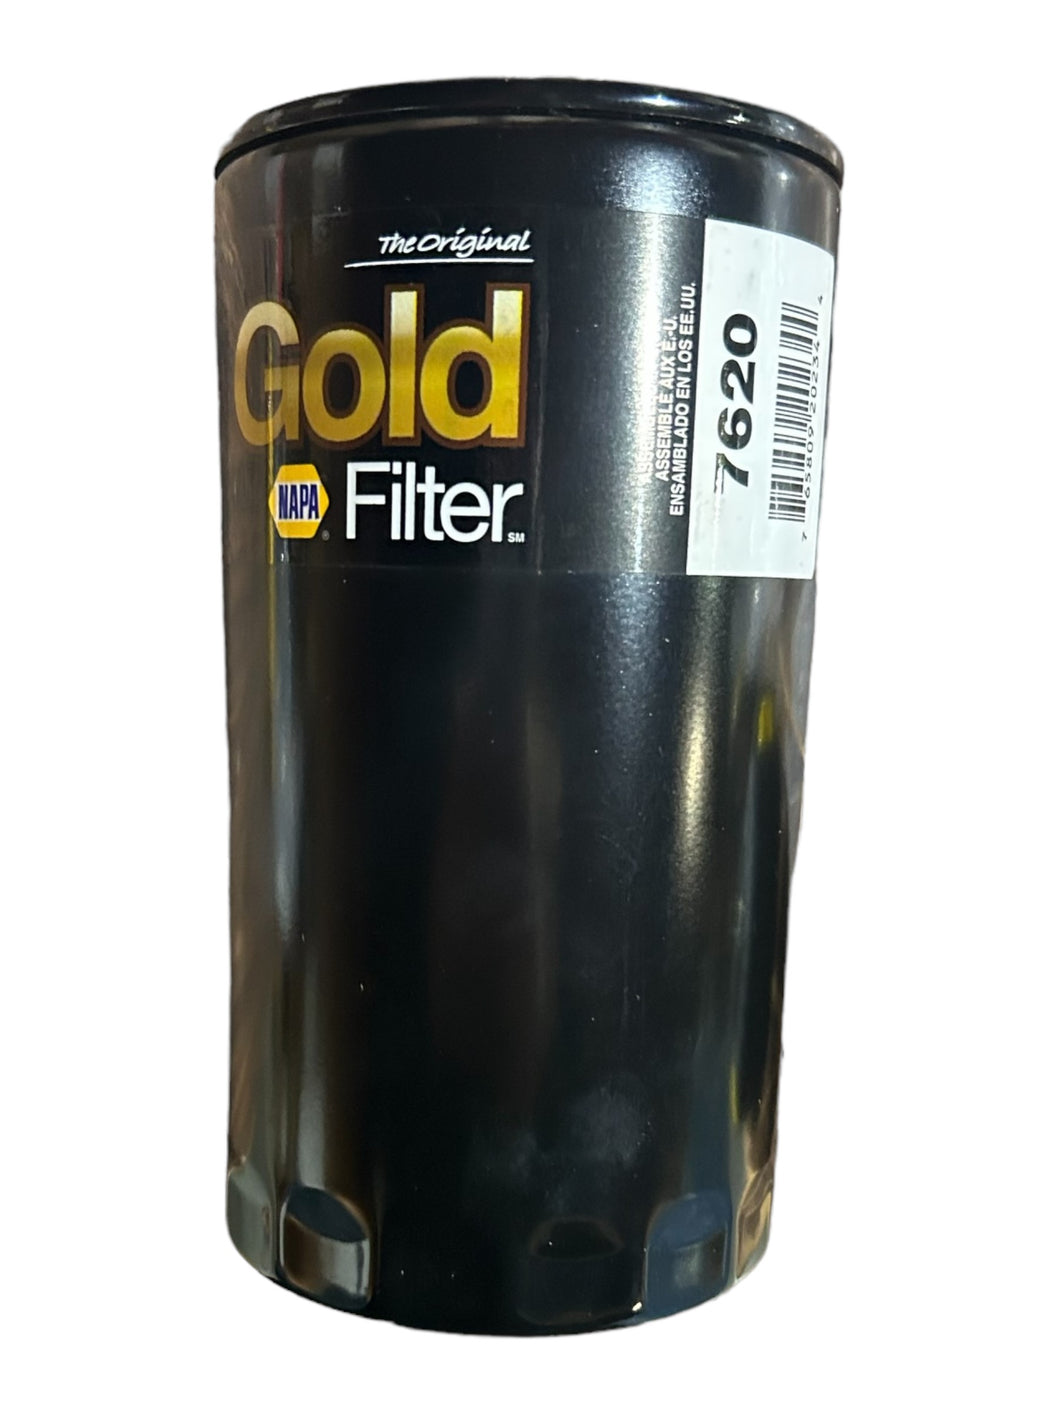 NAPA Gold, FIL 7620, Fuel Filter - FreemanLiquidators - [product_description]